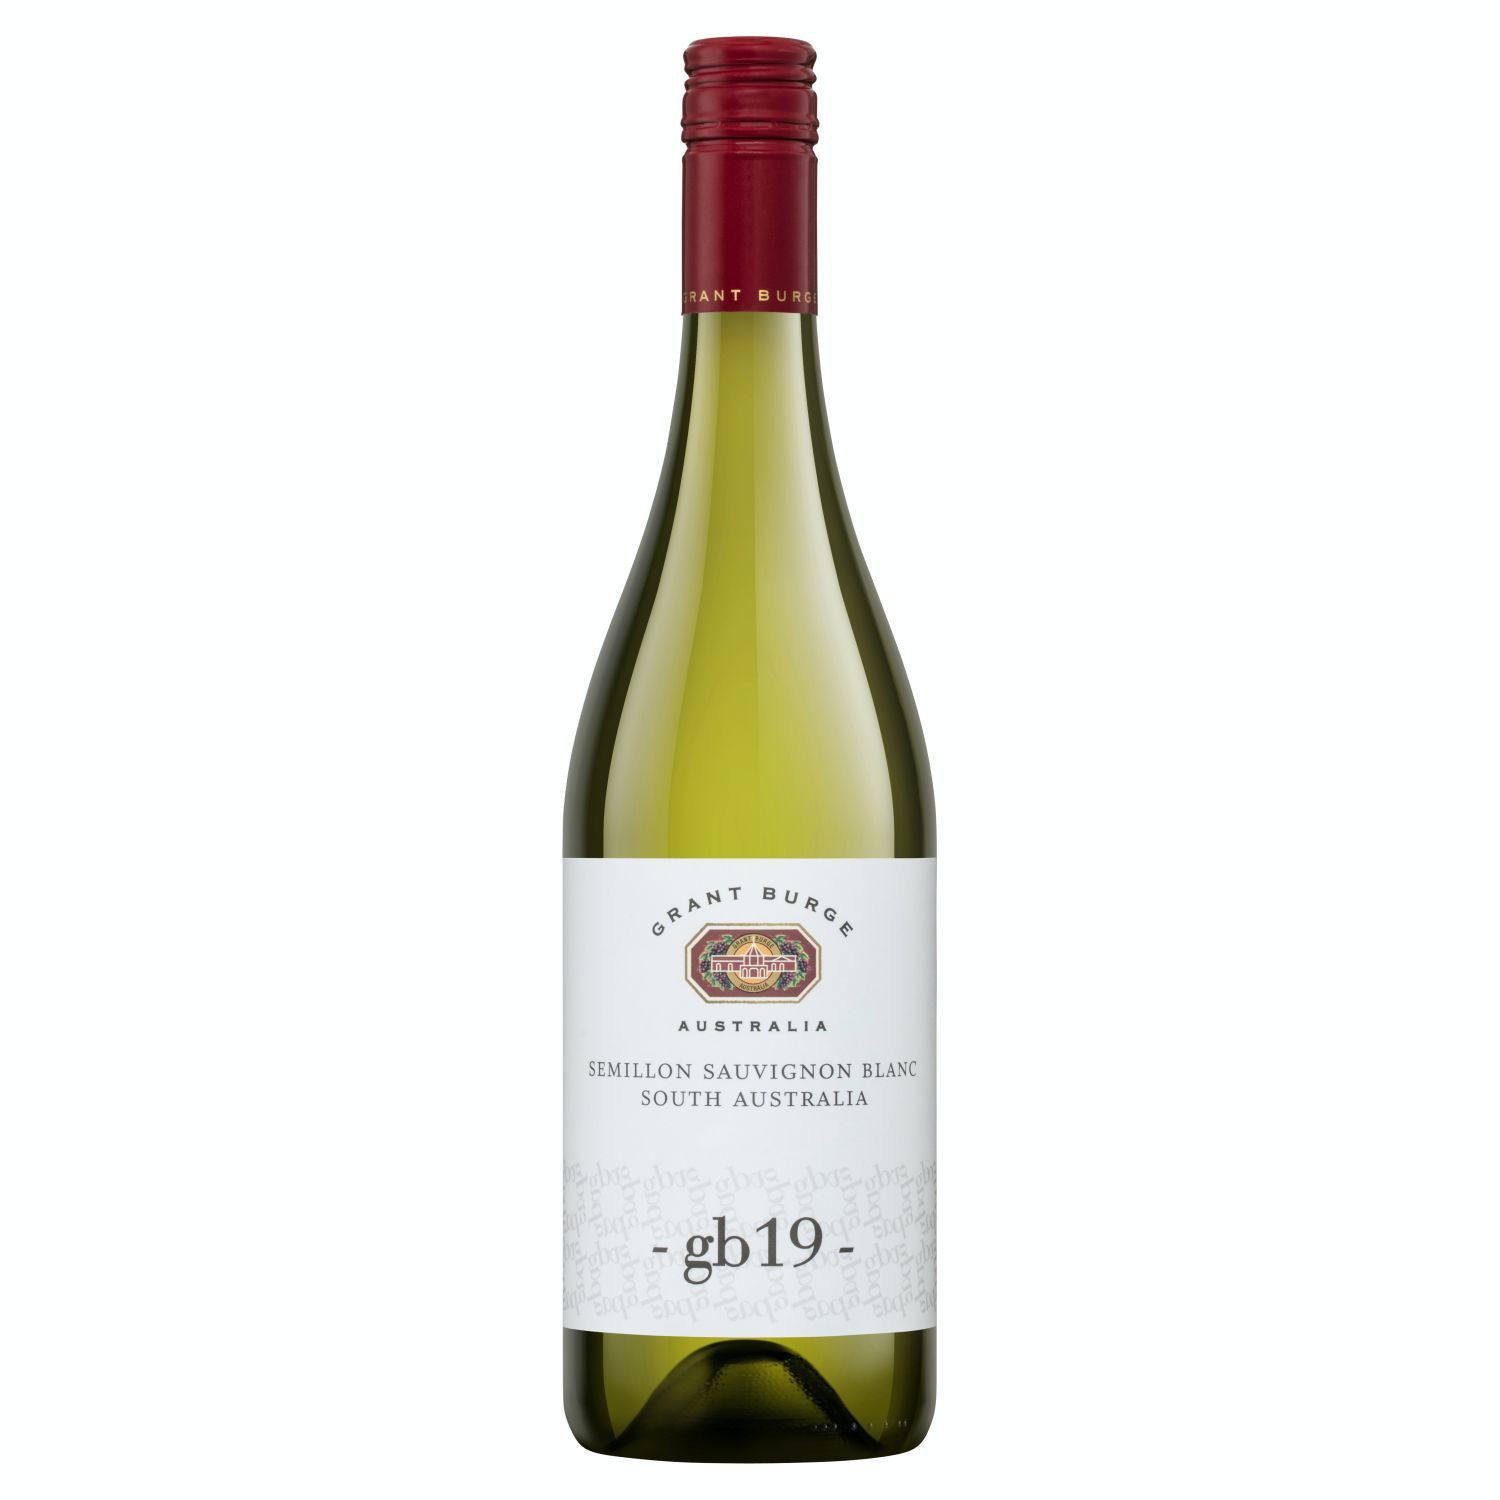 Grant Burge gb19 Semillon Sauvignon Blanc 750mL<br /> <br />Alcohol Volume: 12.50%<br /><br />Pack Format: Bottle<br /><br />Standard Drinks: 7.4</br /><br />Pack Type: Bottle<br /><br />Country of Origin: Australia<br /><br />Region: South Australia<br /><br />Vintage: '2019<br />